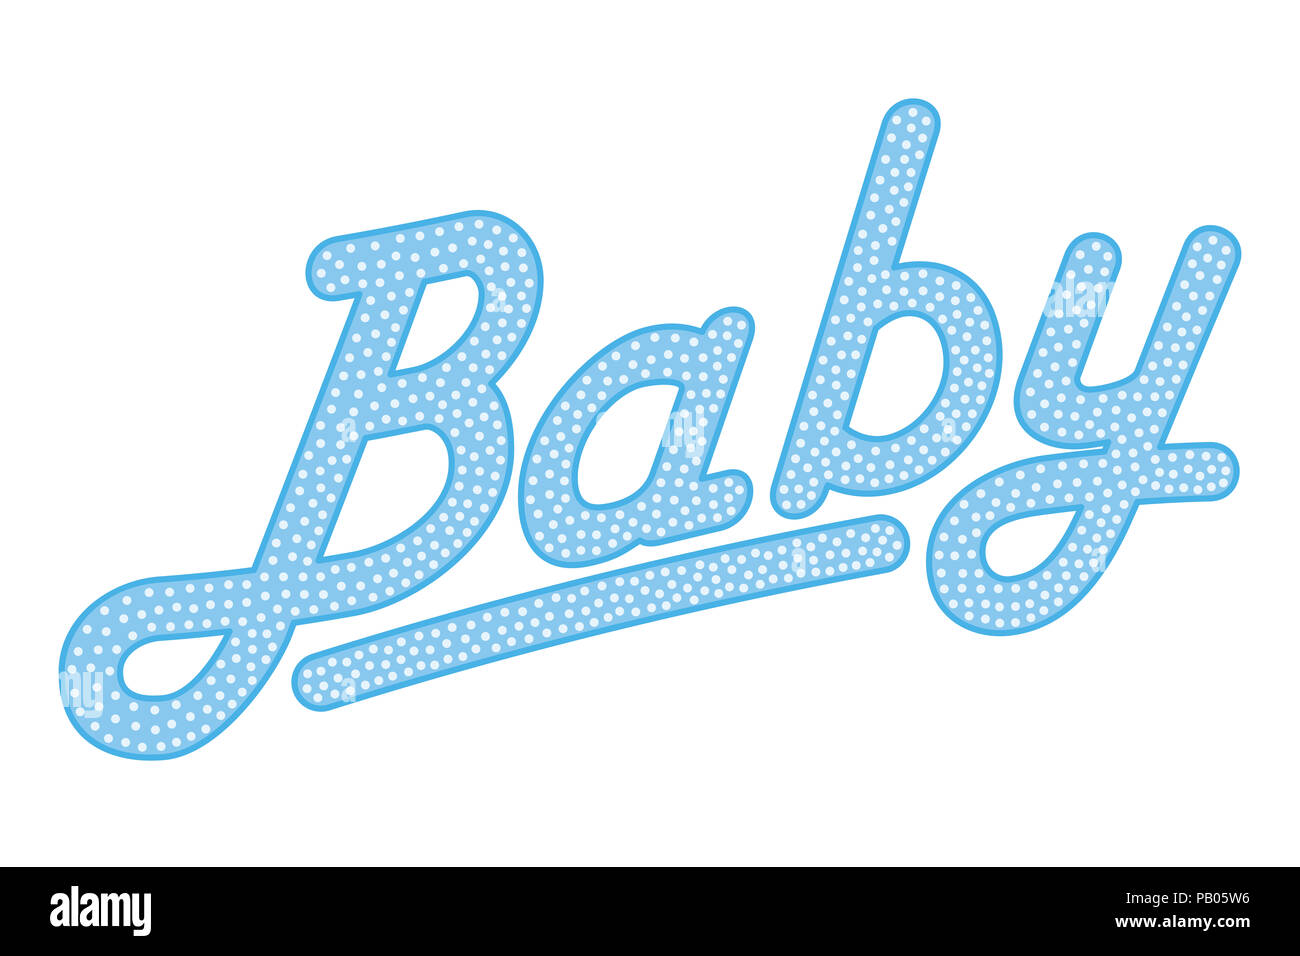 Kursiver Schrift das Wort Baby, blau gefärbt mit hellen und kleinen Punkten. Zufällig punktiert, Kursiv schreiben. Isoliert. Abbildung über Weiß. Stockfoto